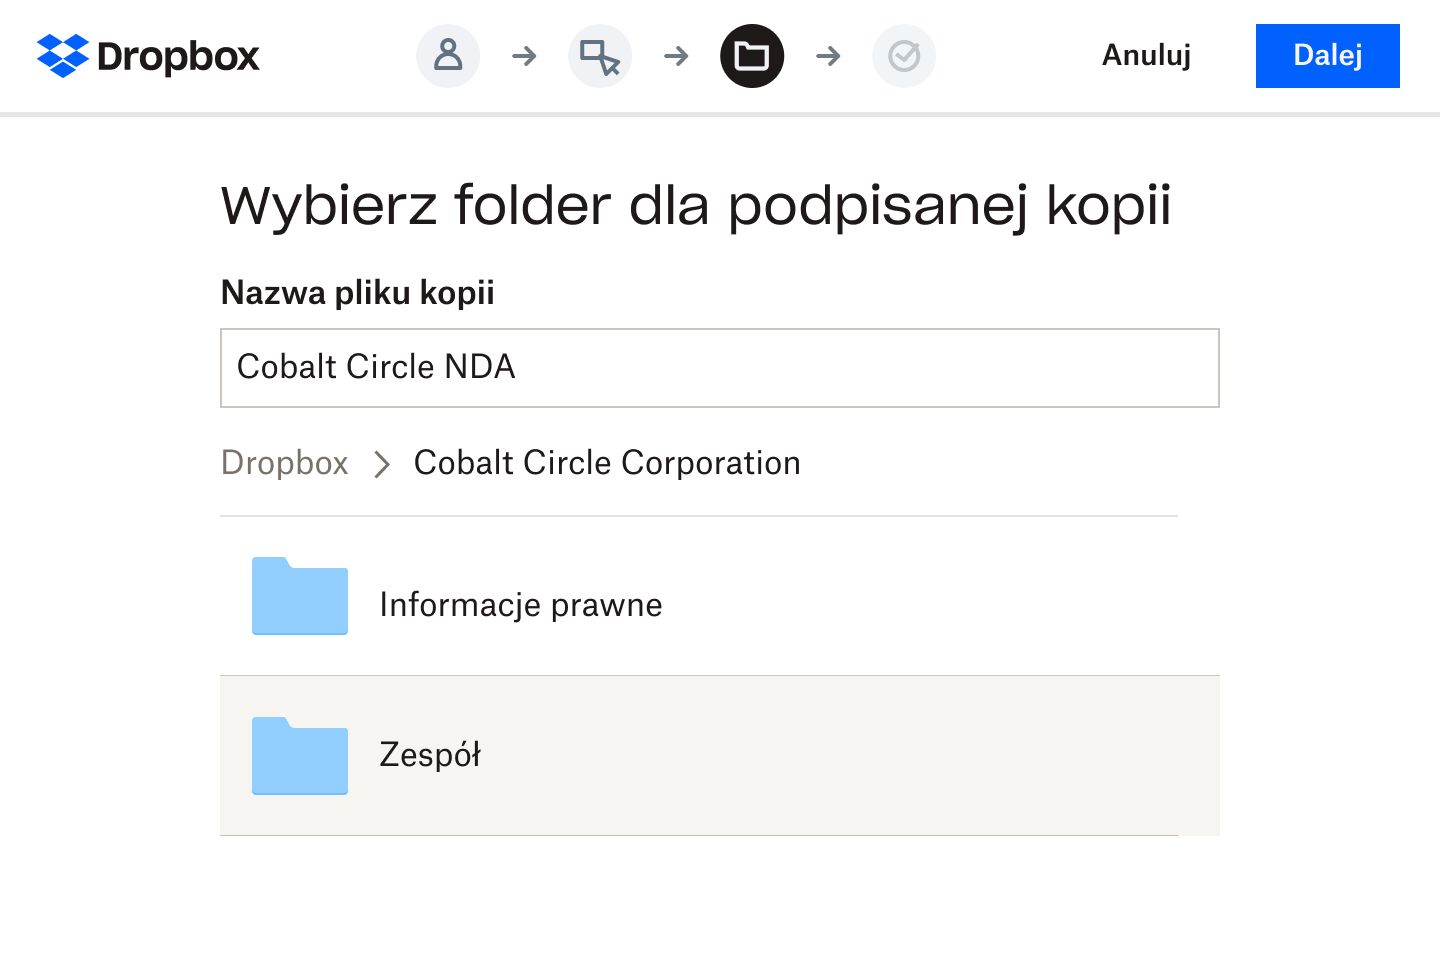 Użytkownik wybierający w aplikacji Dropbox folder, w którym będzie przechowywana wersja cyfrowa podpisanej umowy o zachowaniu poufności